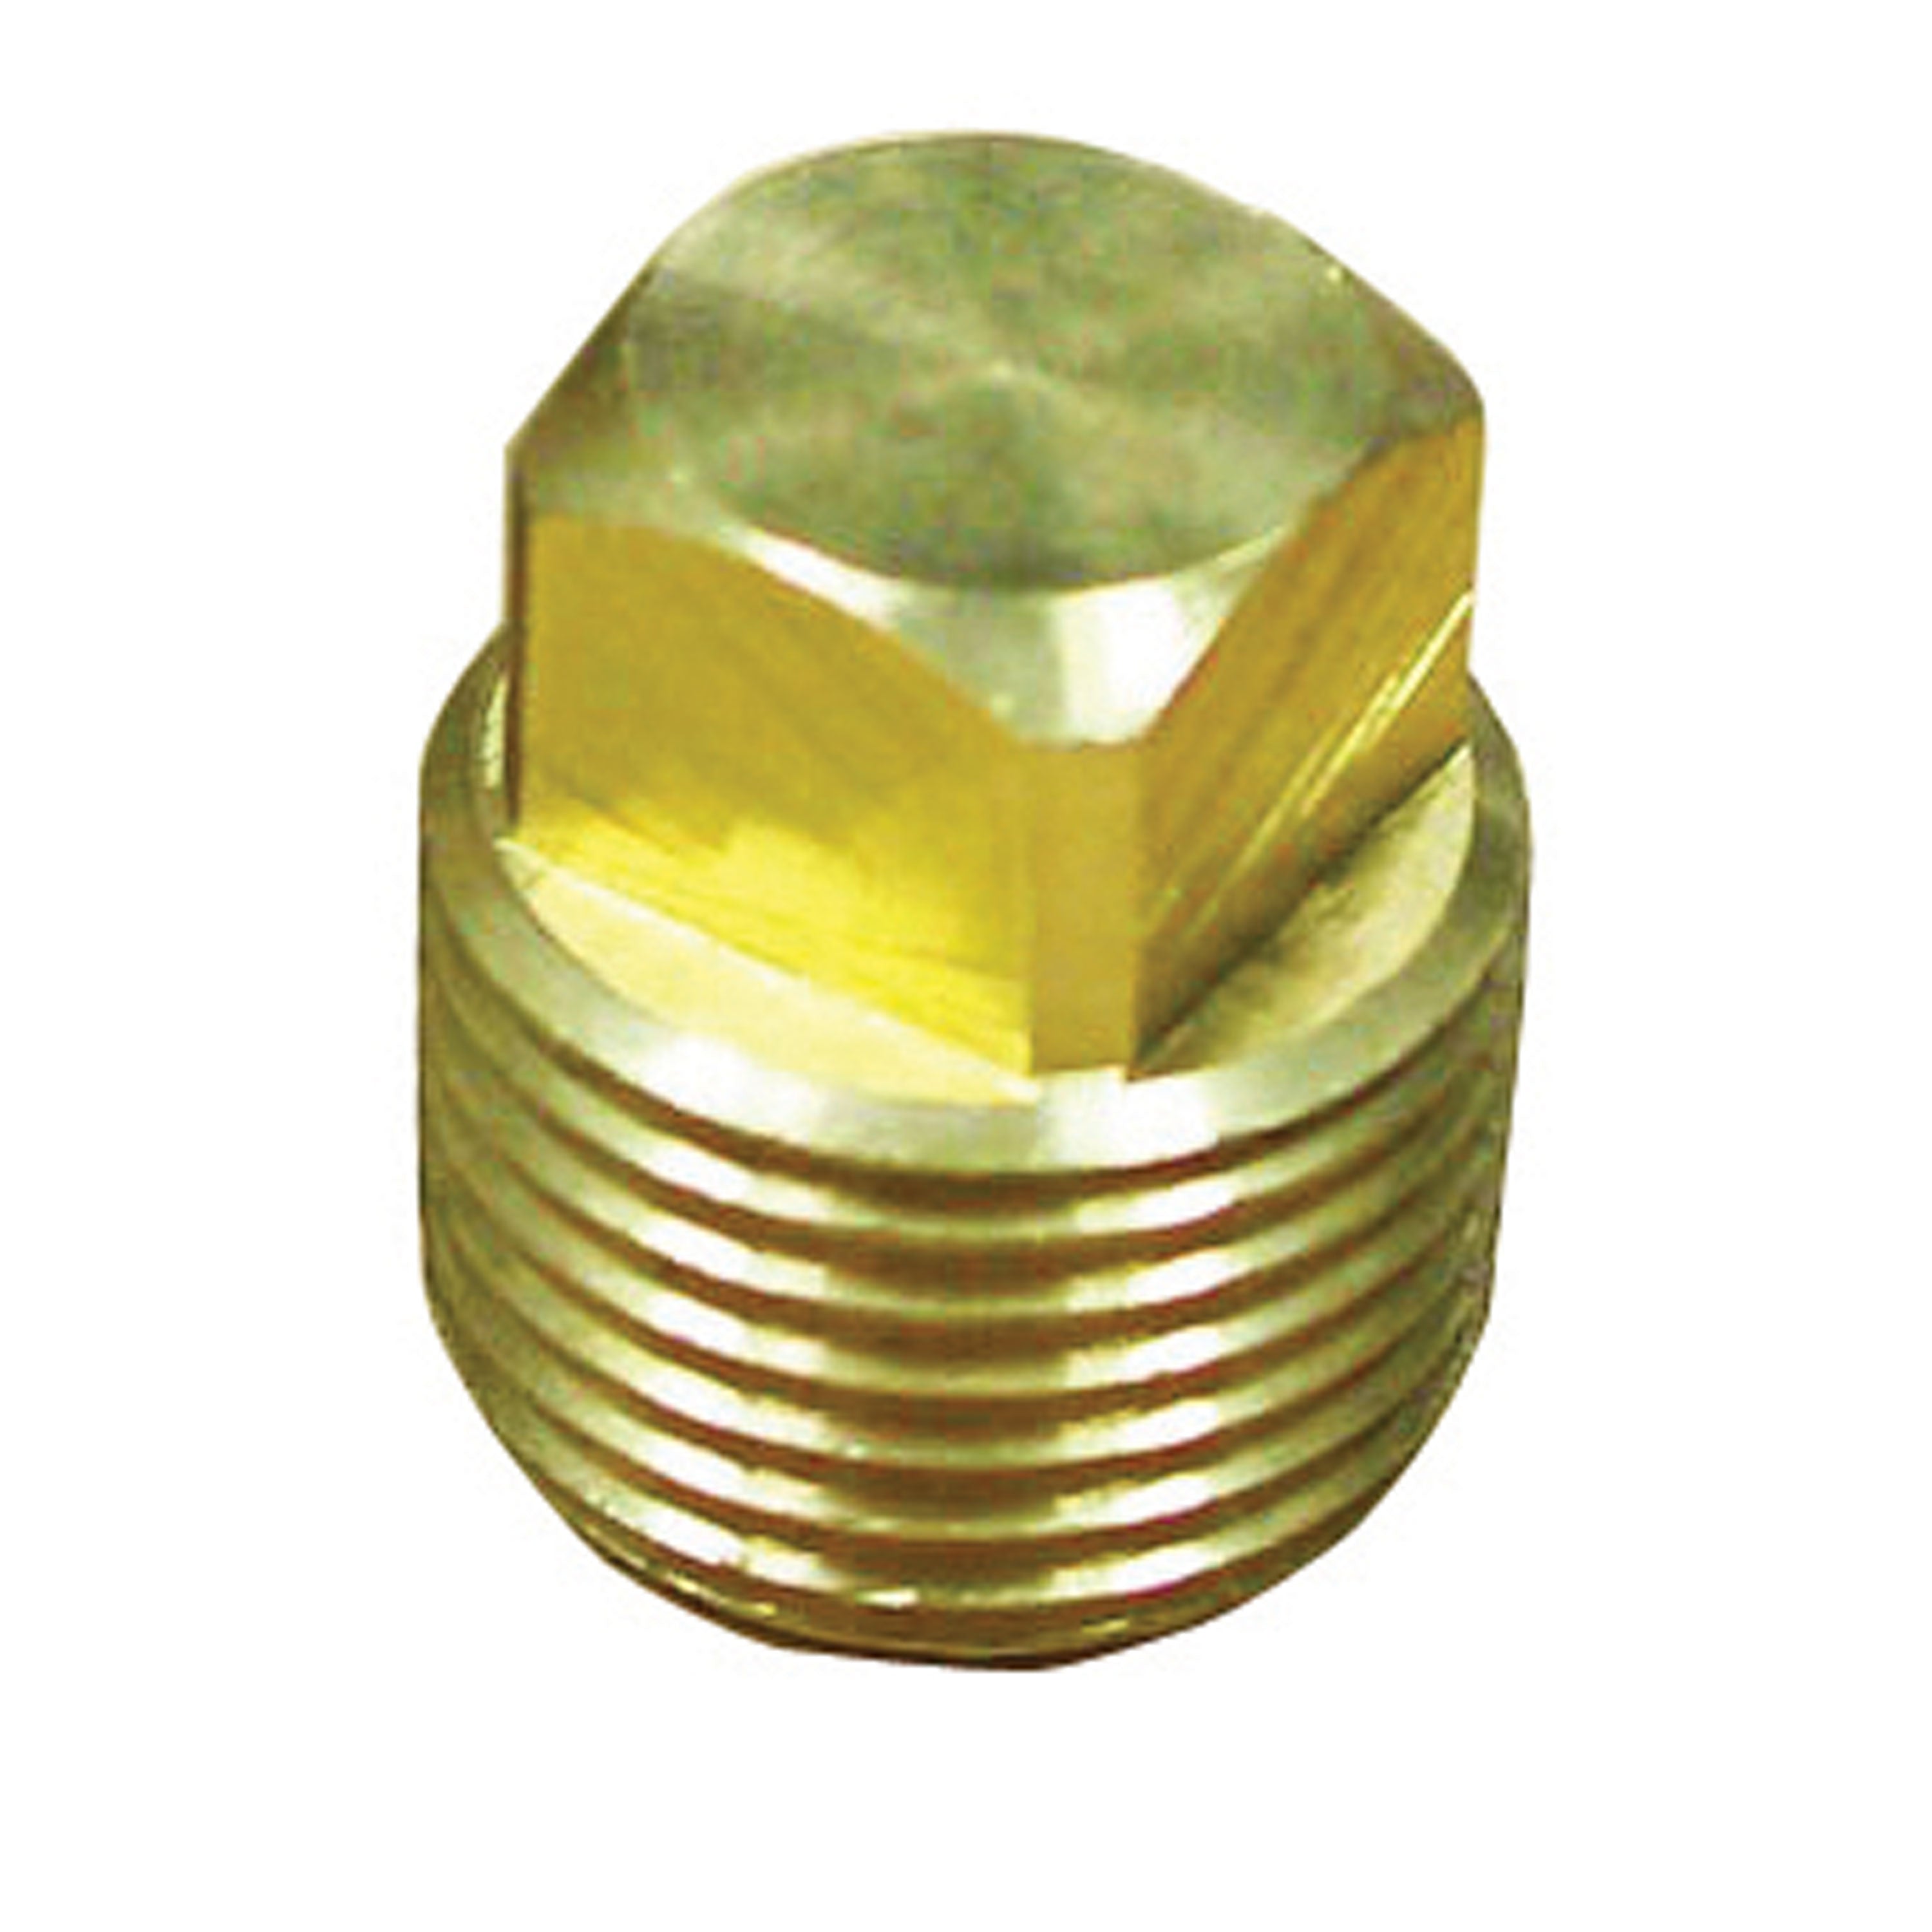 Sierra 020307-10 Brass Plug for 020305